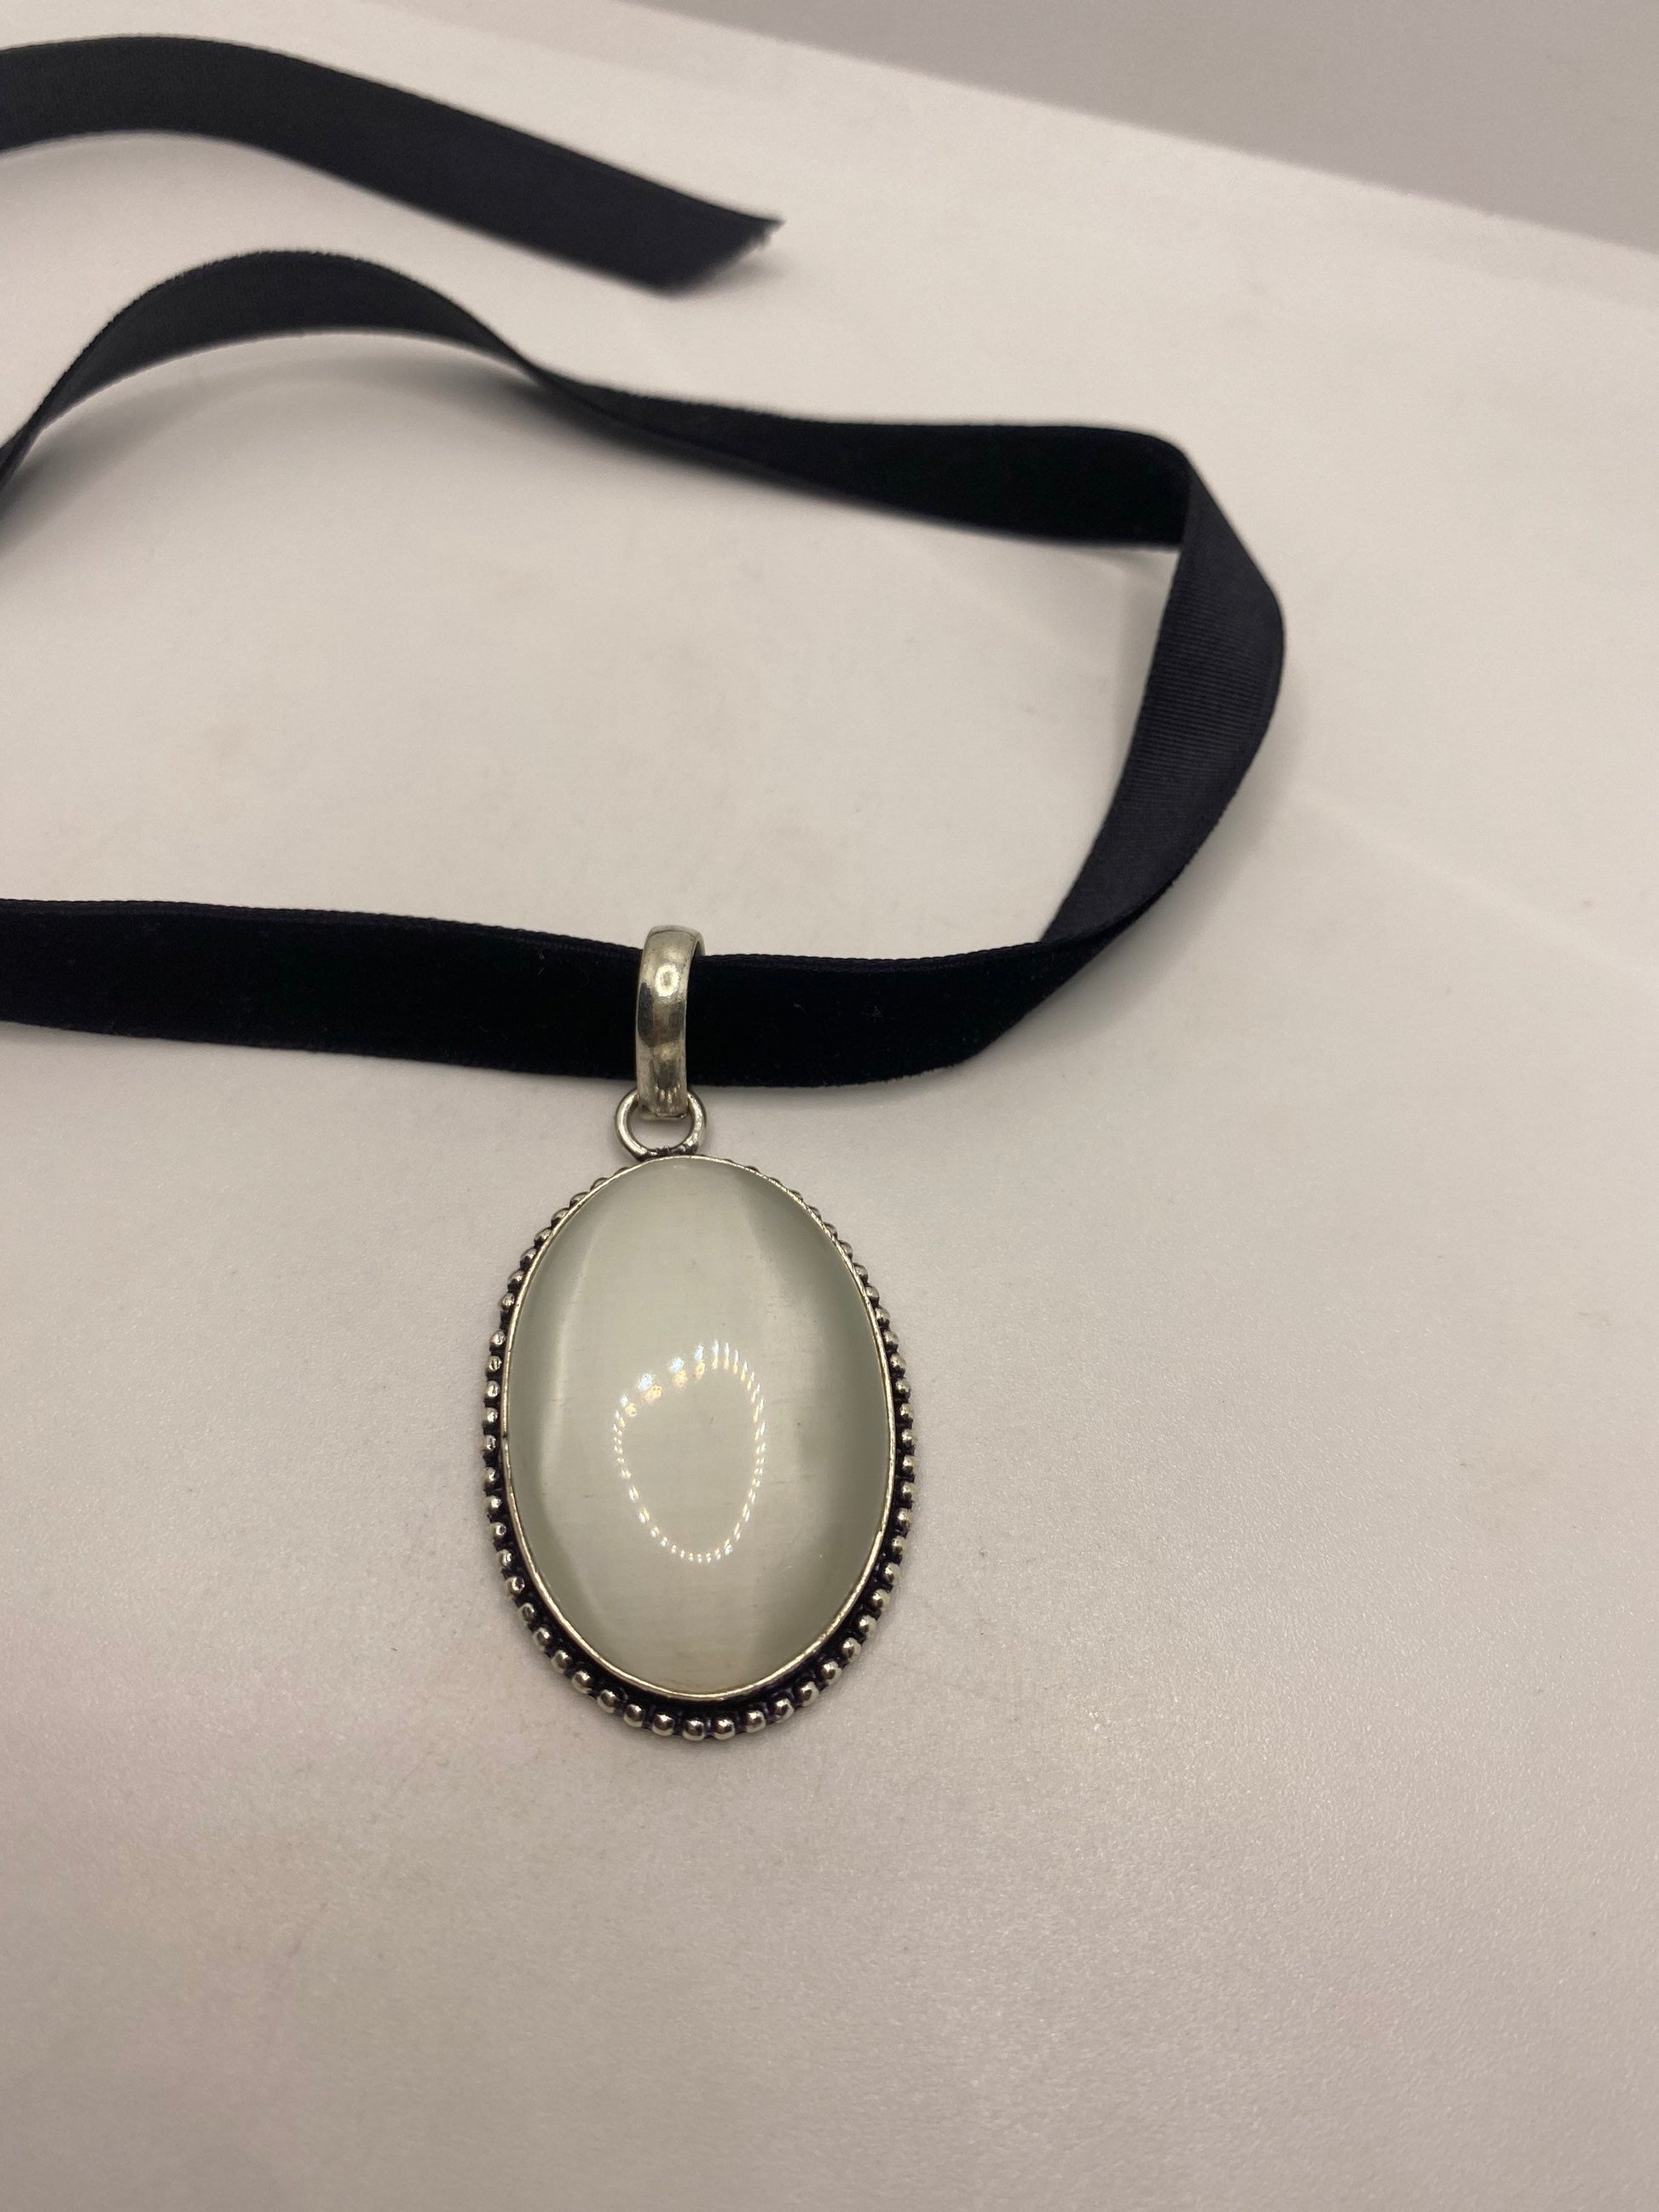 Vintage White Cats Eye Glass Antique Black Velvet Ribbon Choker Necklace